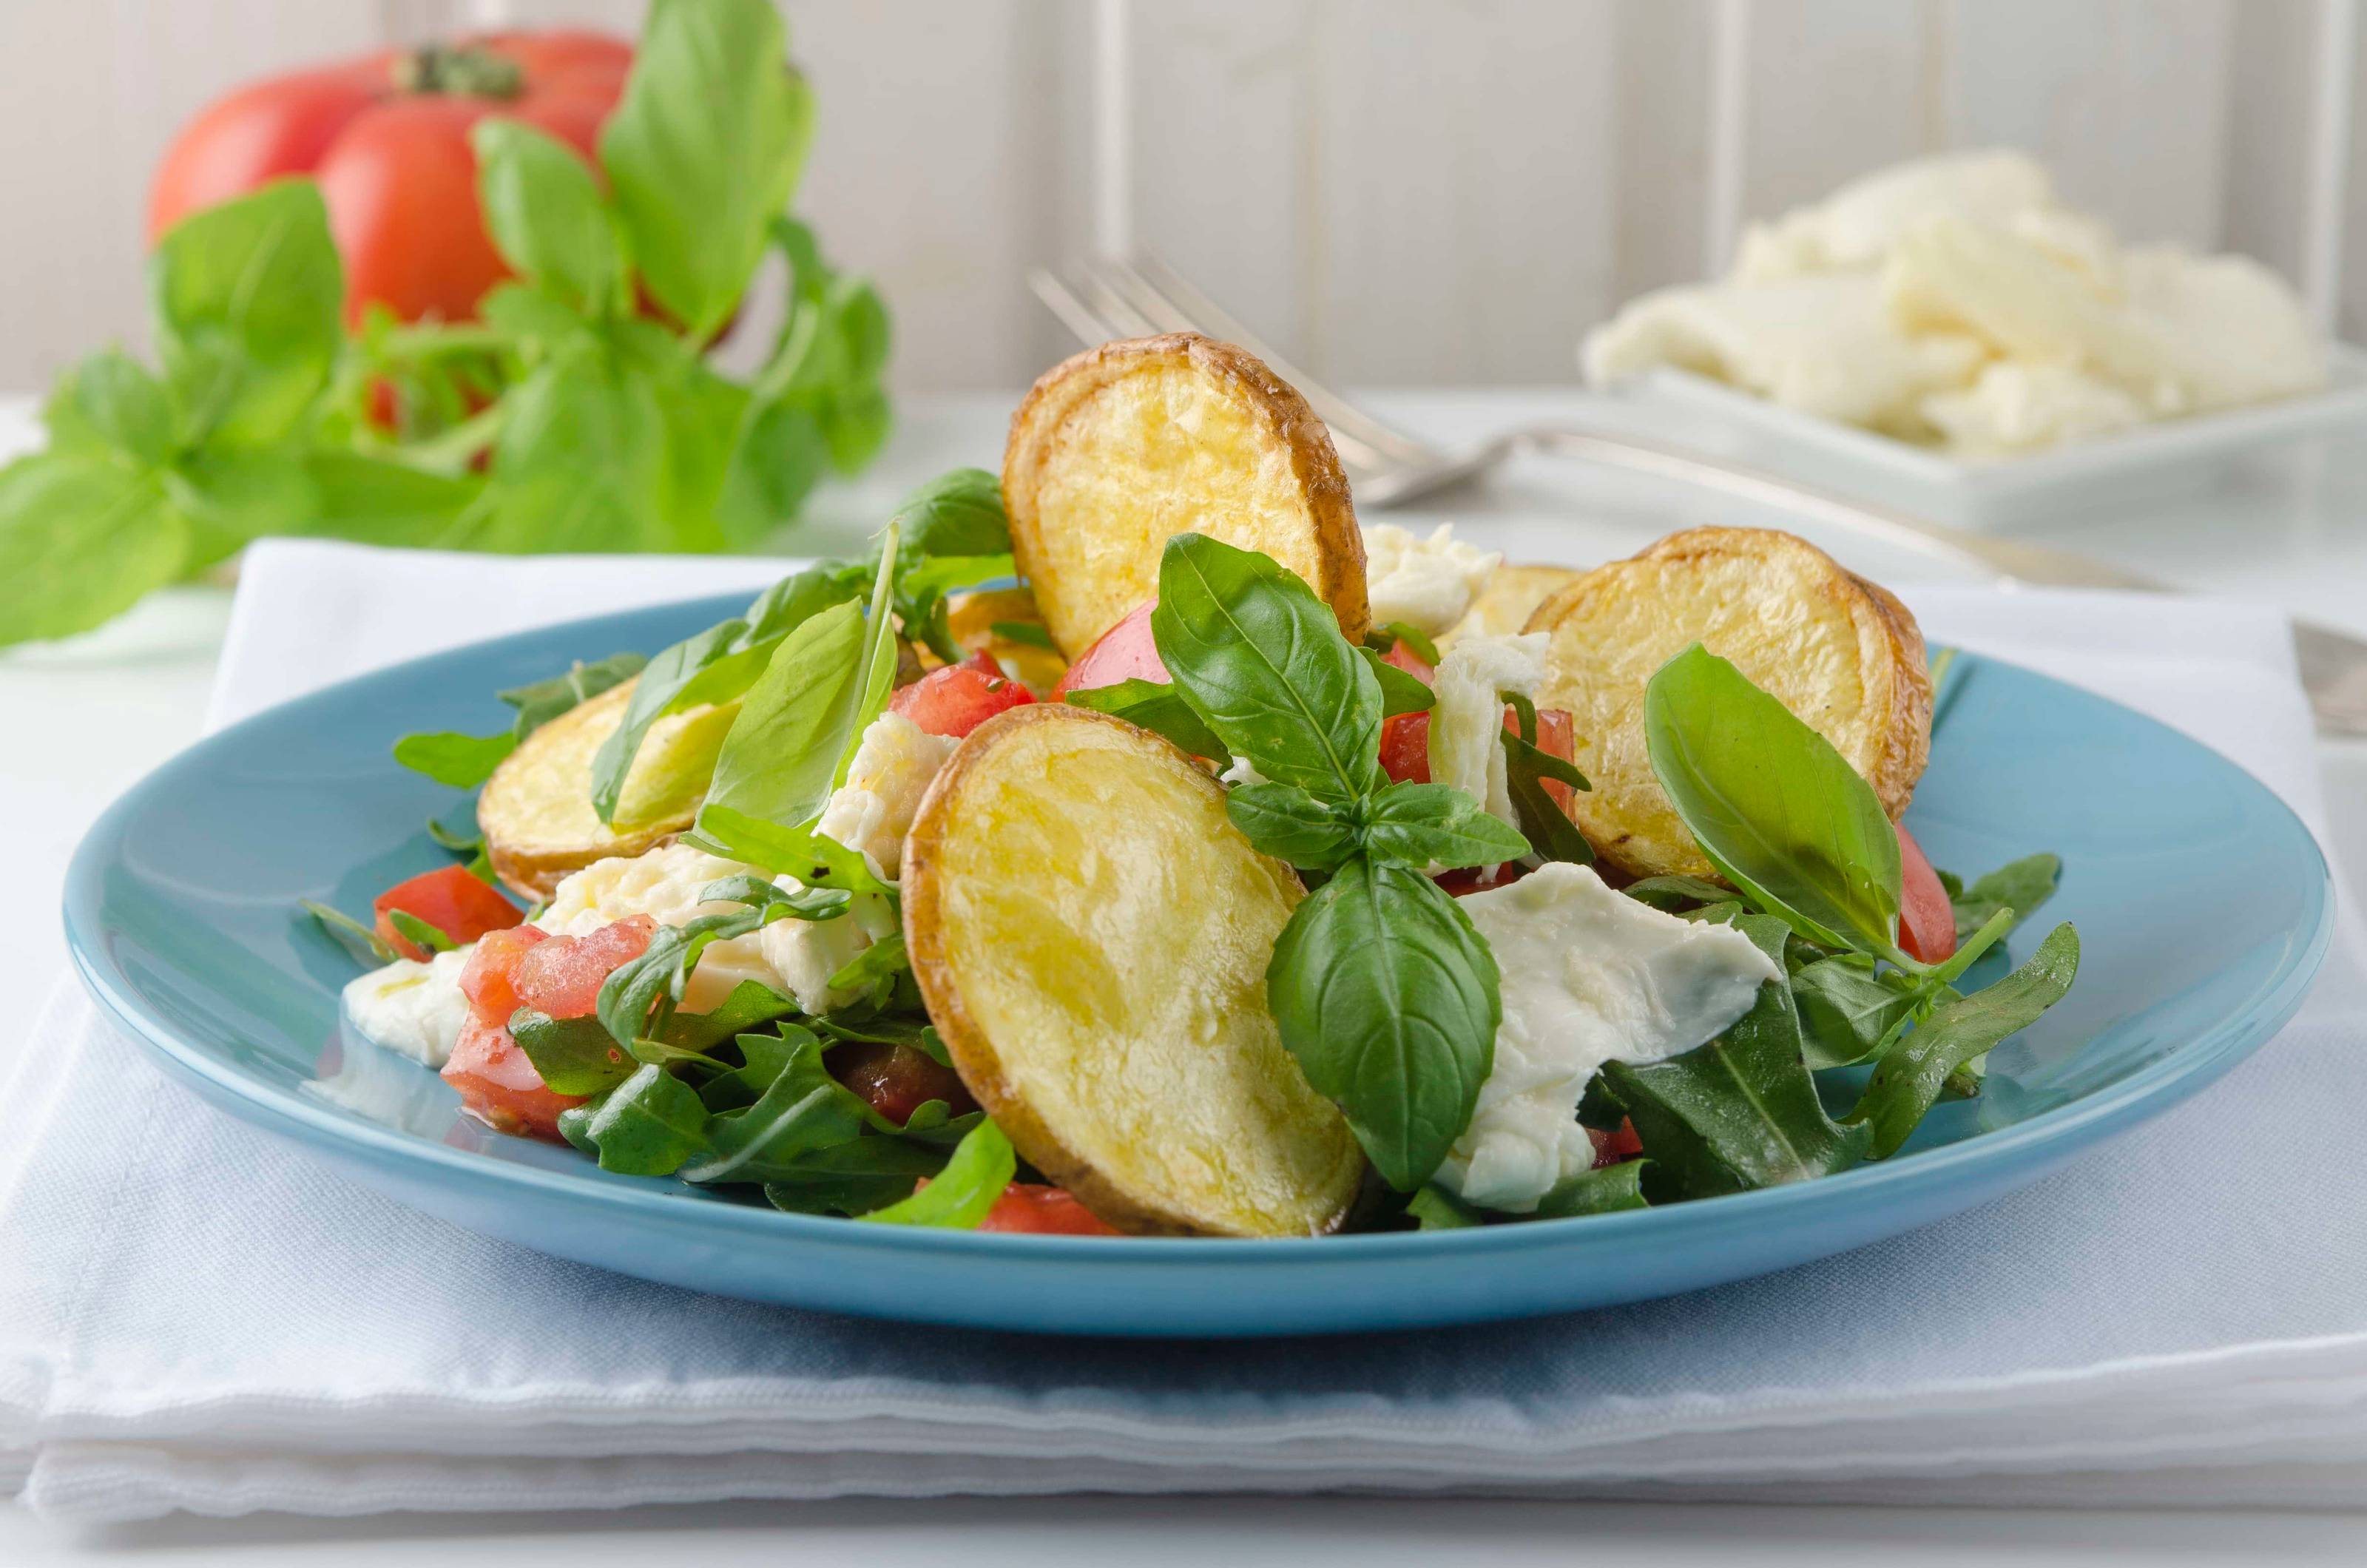 Caprese-Salat mit Braterdäpfeln aus der Heißluftfritteuse